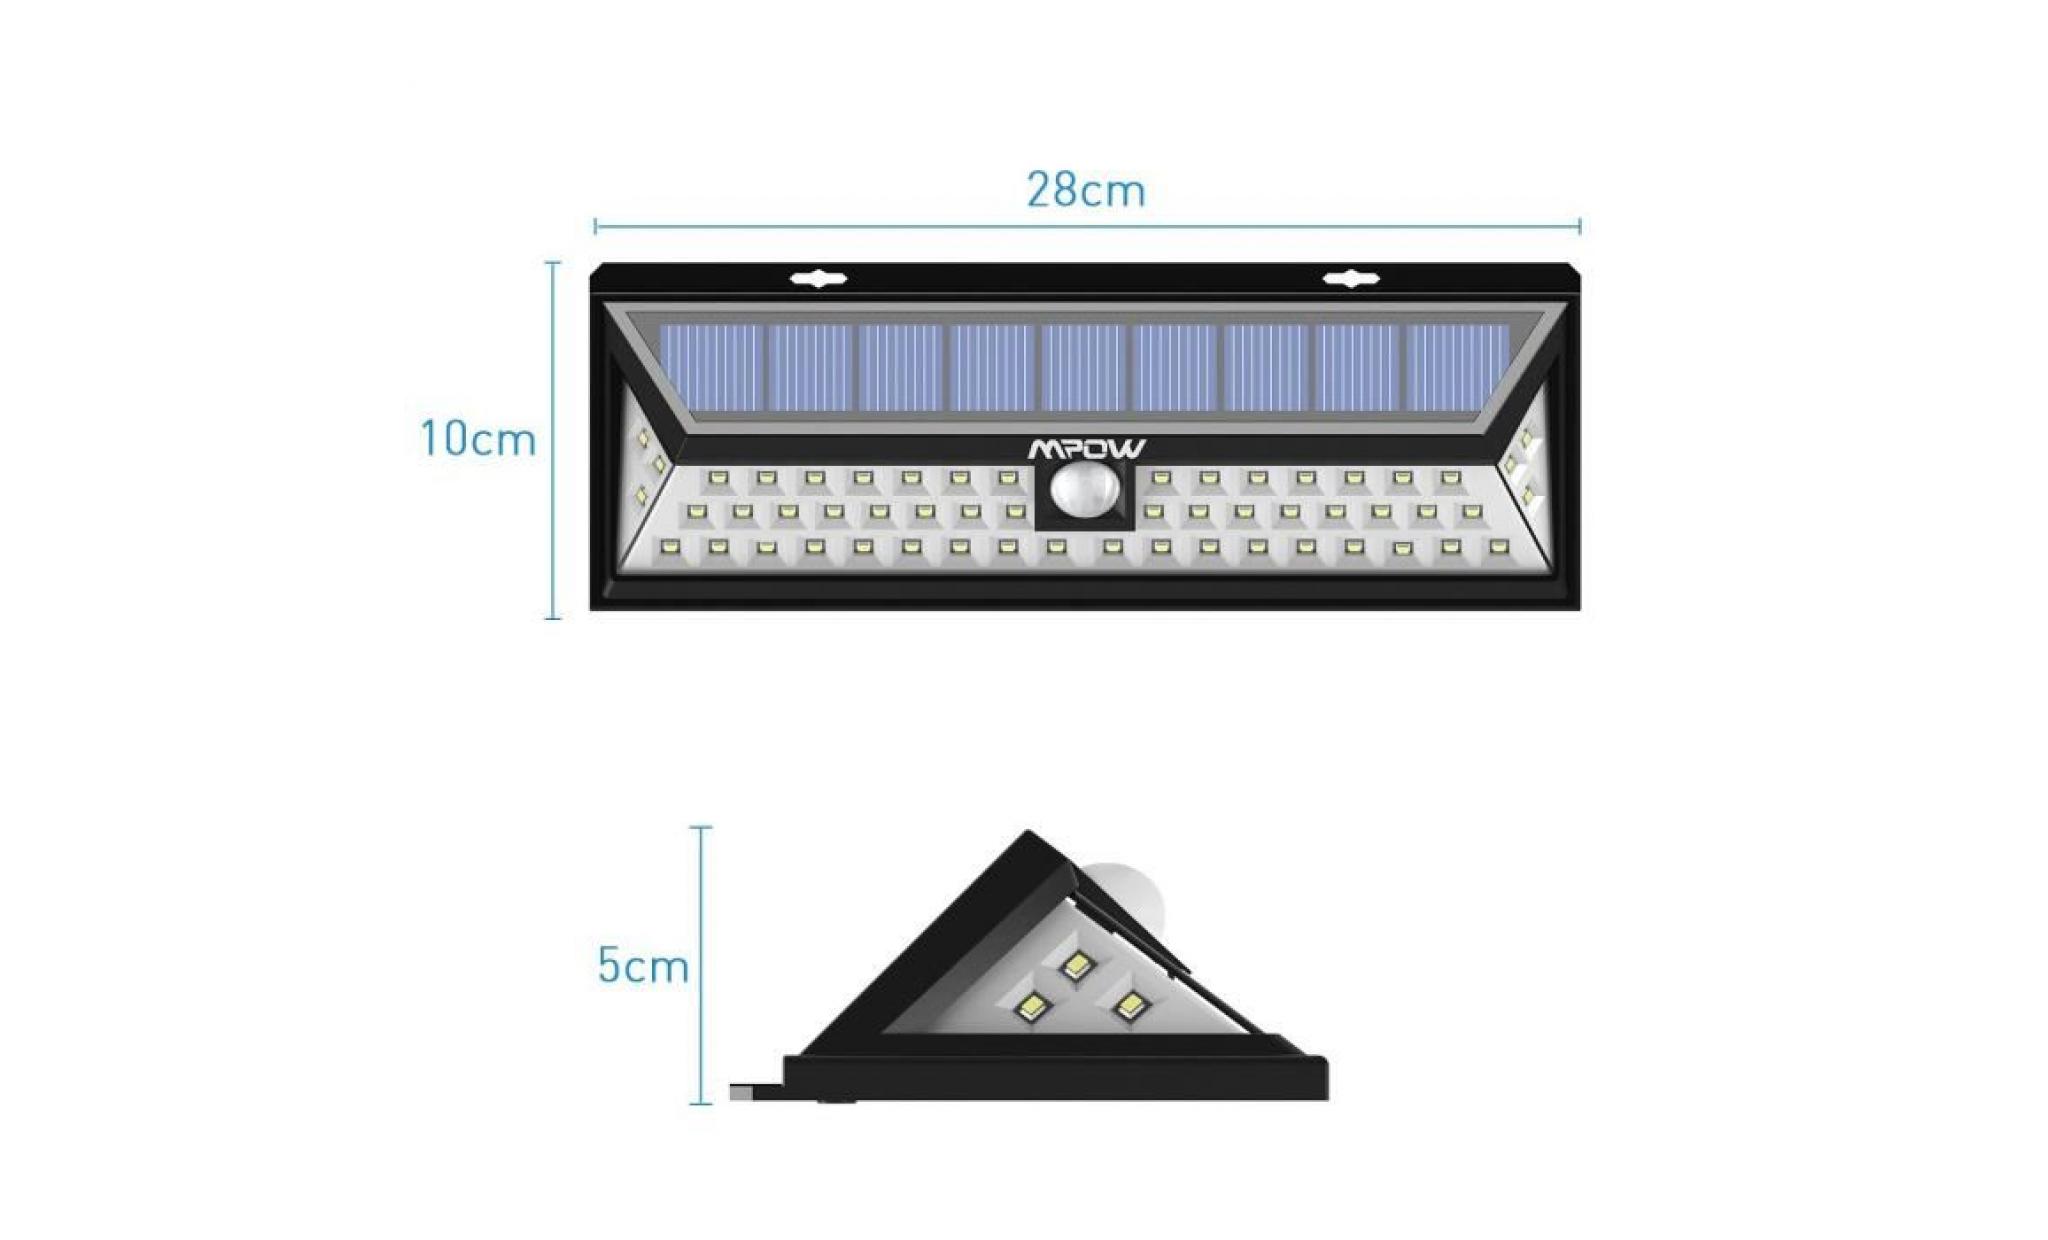 【4 pack】mpow 54 led lampe solaire extérieure etanche ip65 sans fil luminaire exterieur / eclairage exterieur 270°grand angle pas cher